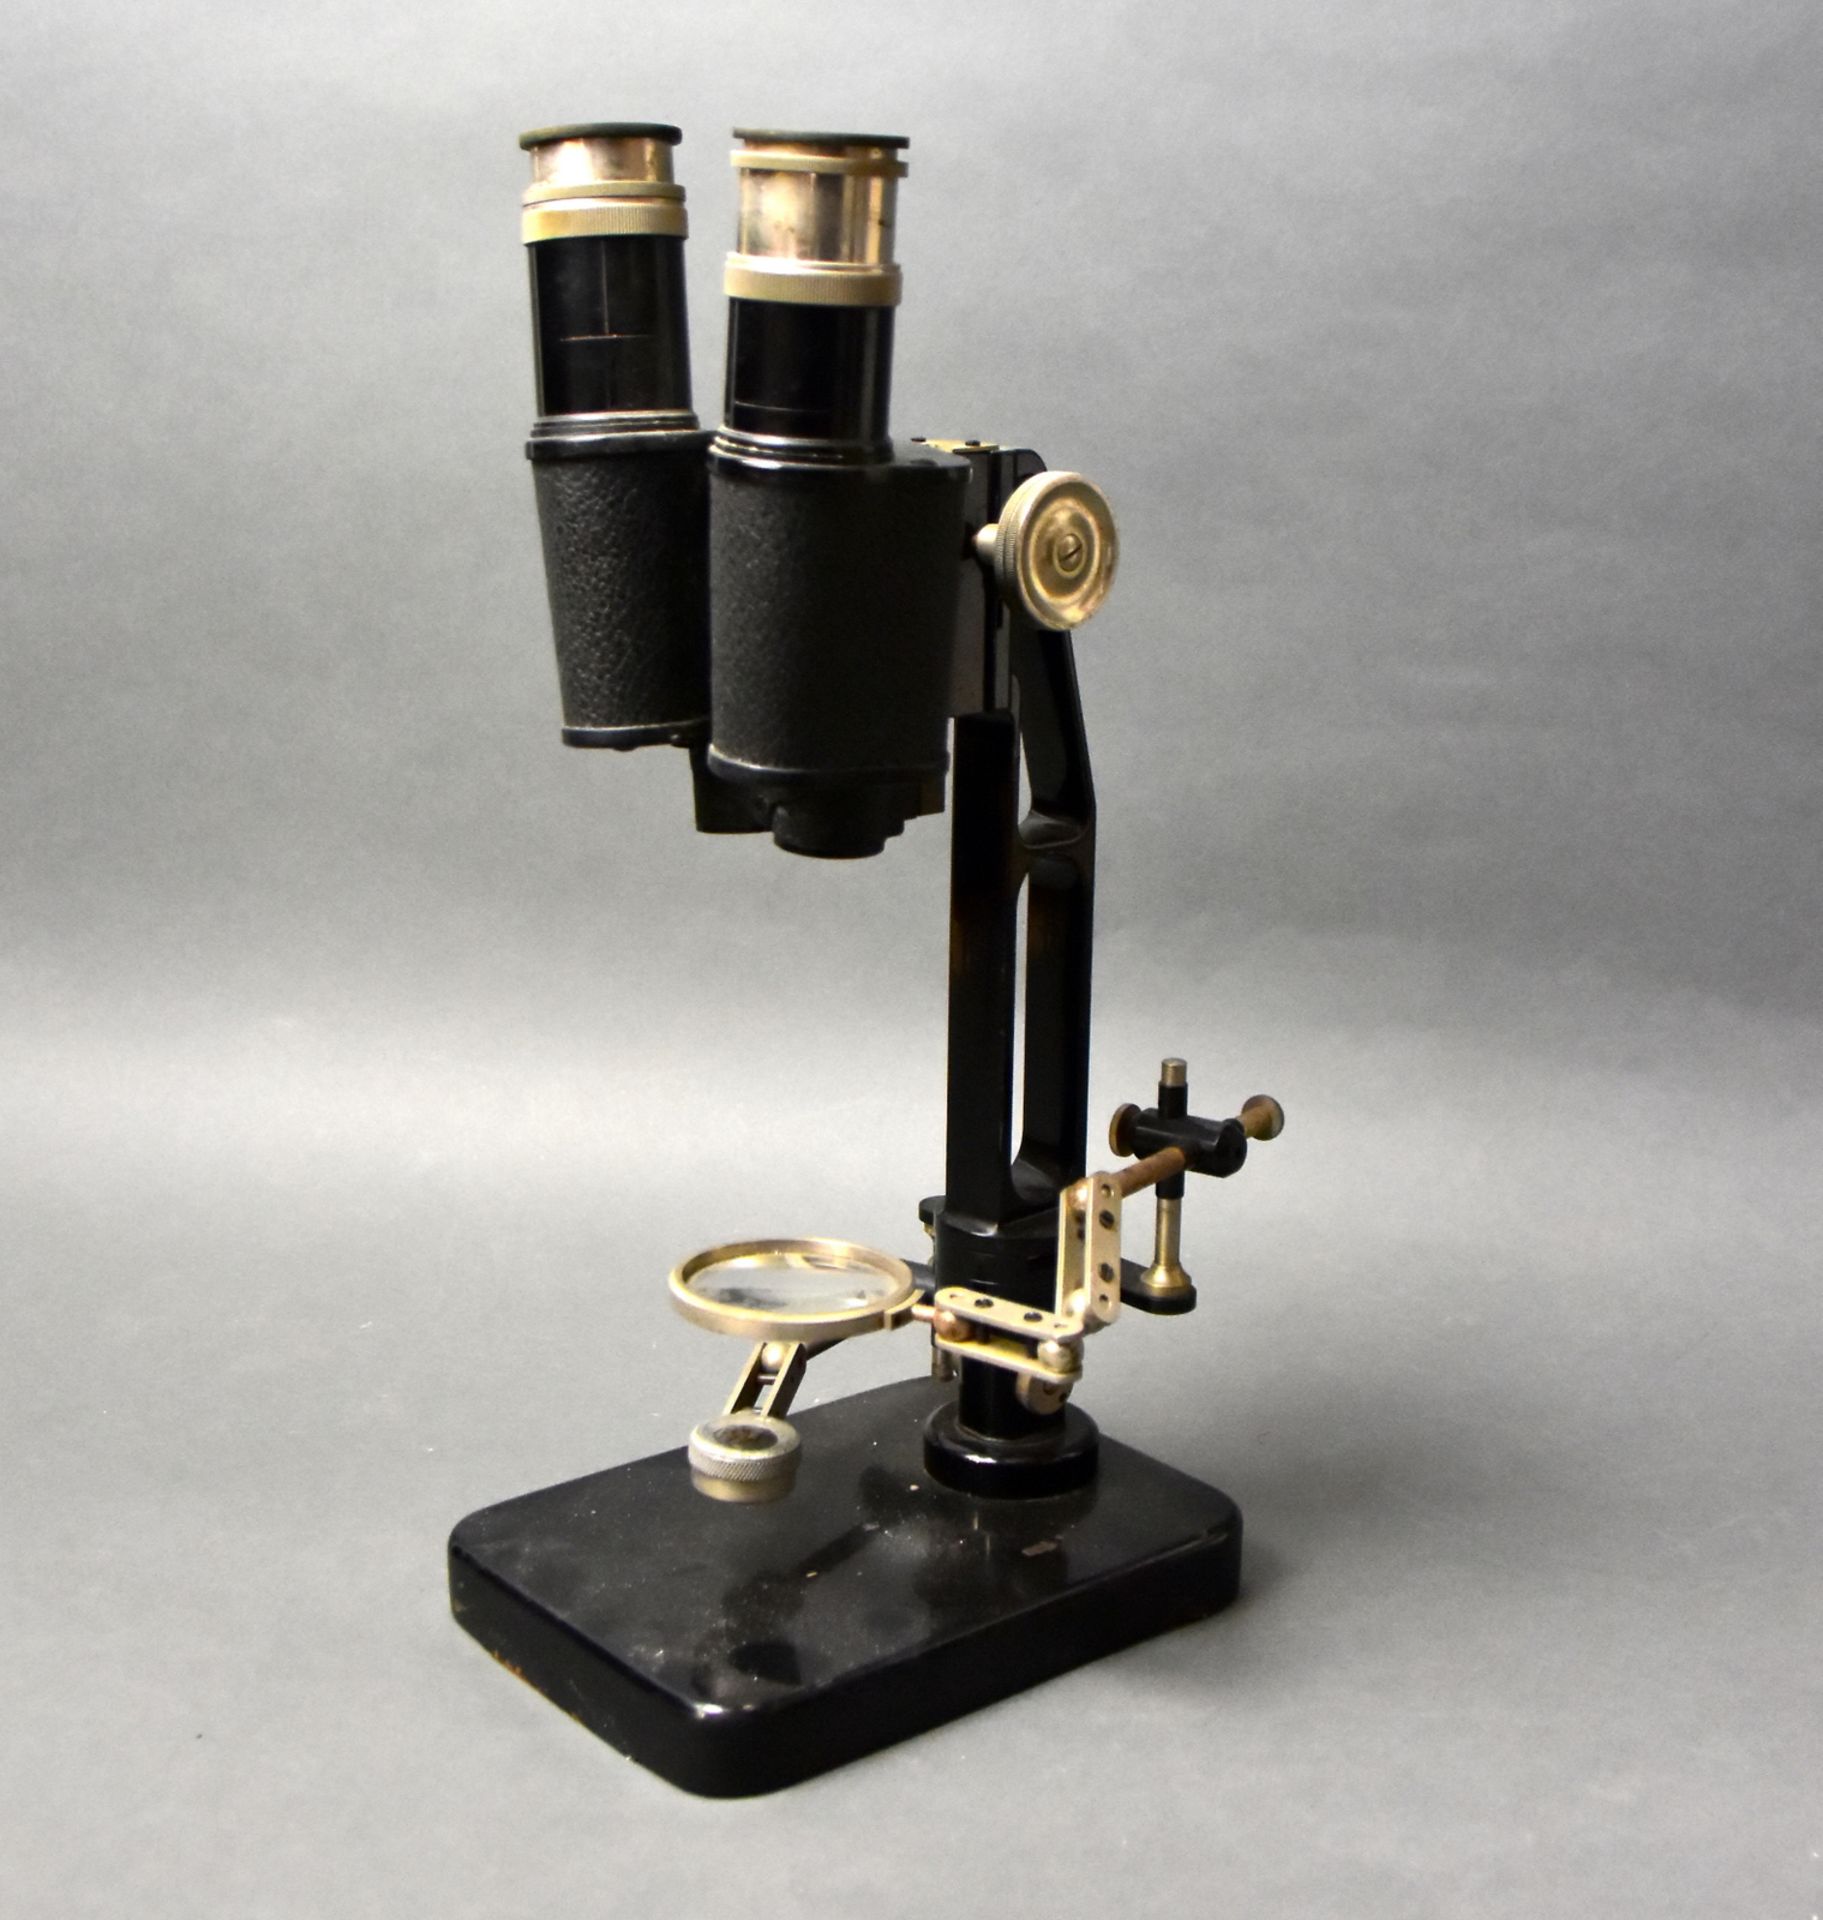 Wissenschaftliches Mikroskop Ernst Leitz Wetzlar, Biocular, zwei bewegliche Arme für Objekt- - Image 2 of 3